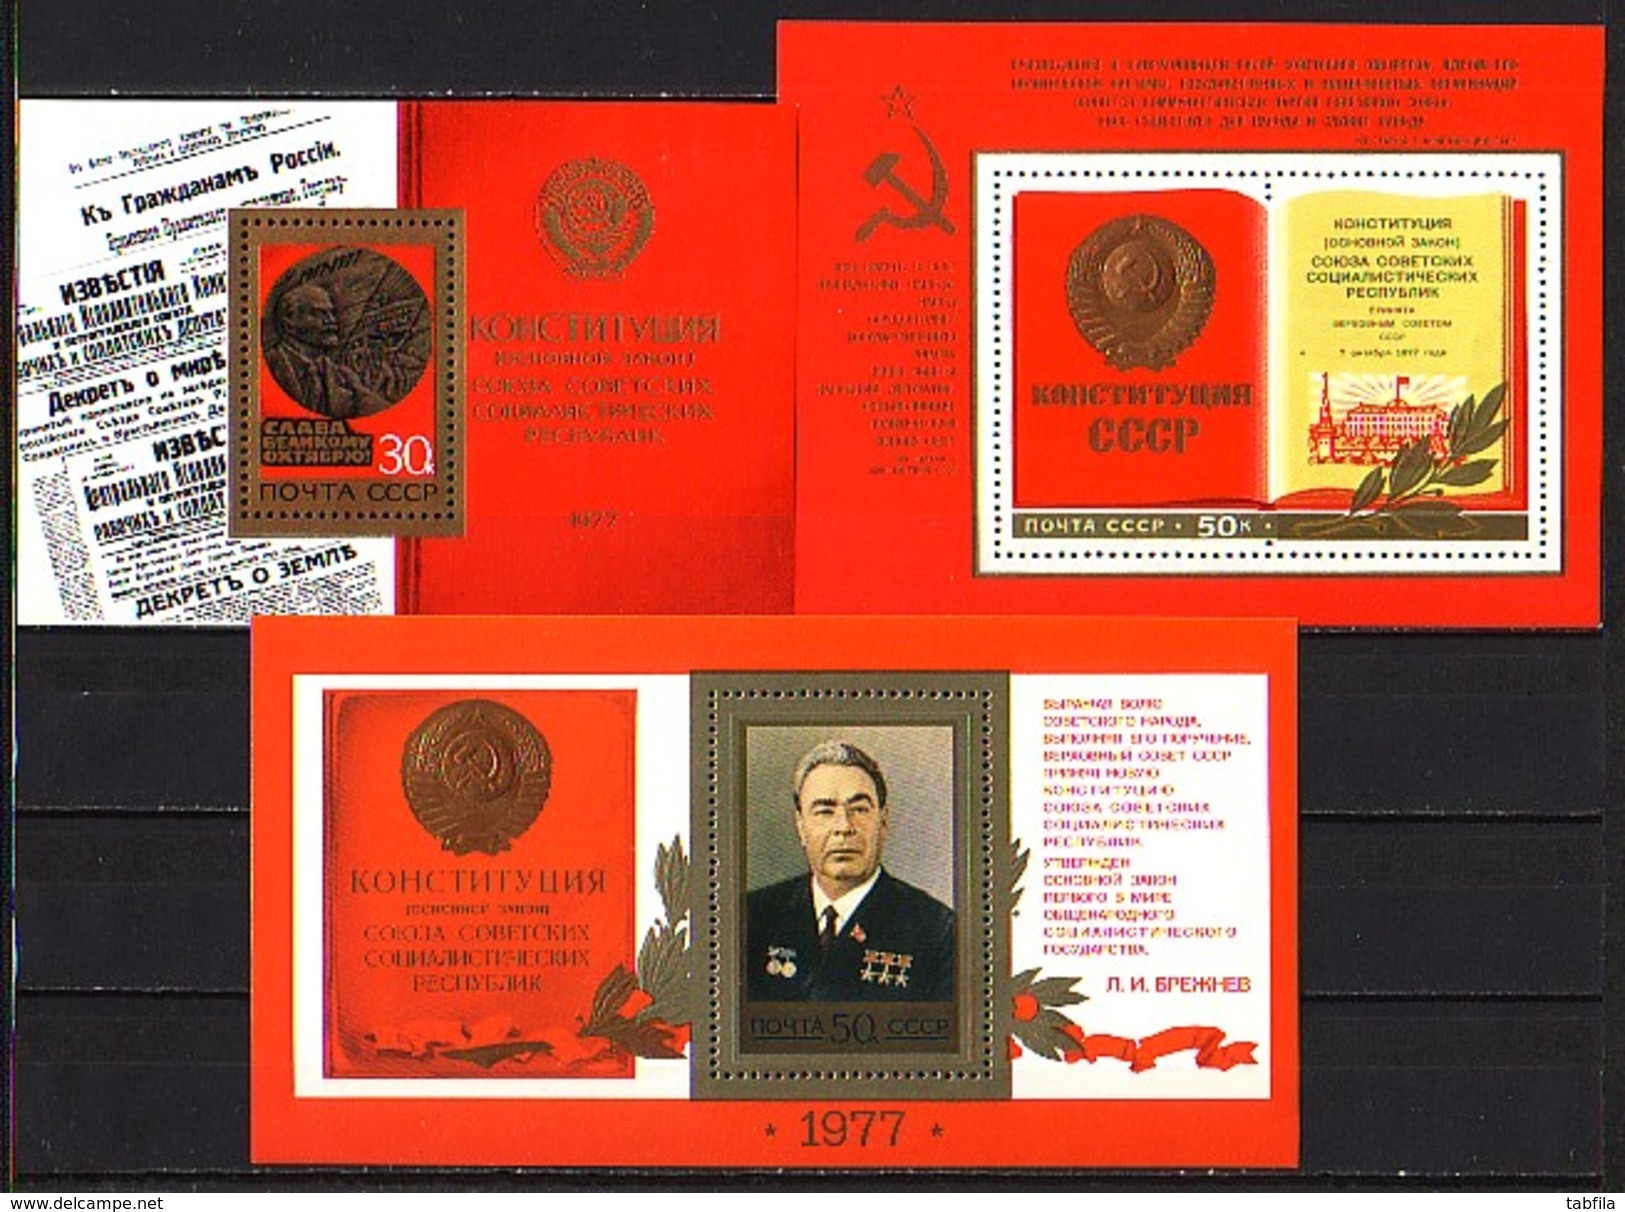 RUSSIA - UdSSR - 1977 - Lot'77 Anne Incomplet - 62tim. + 1 PF + 8 Bl - Michel 78.00EU - Annate Complete